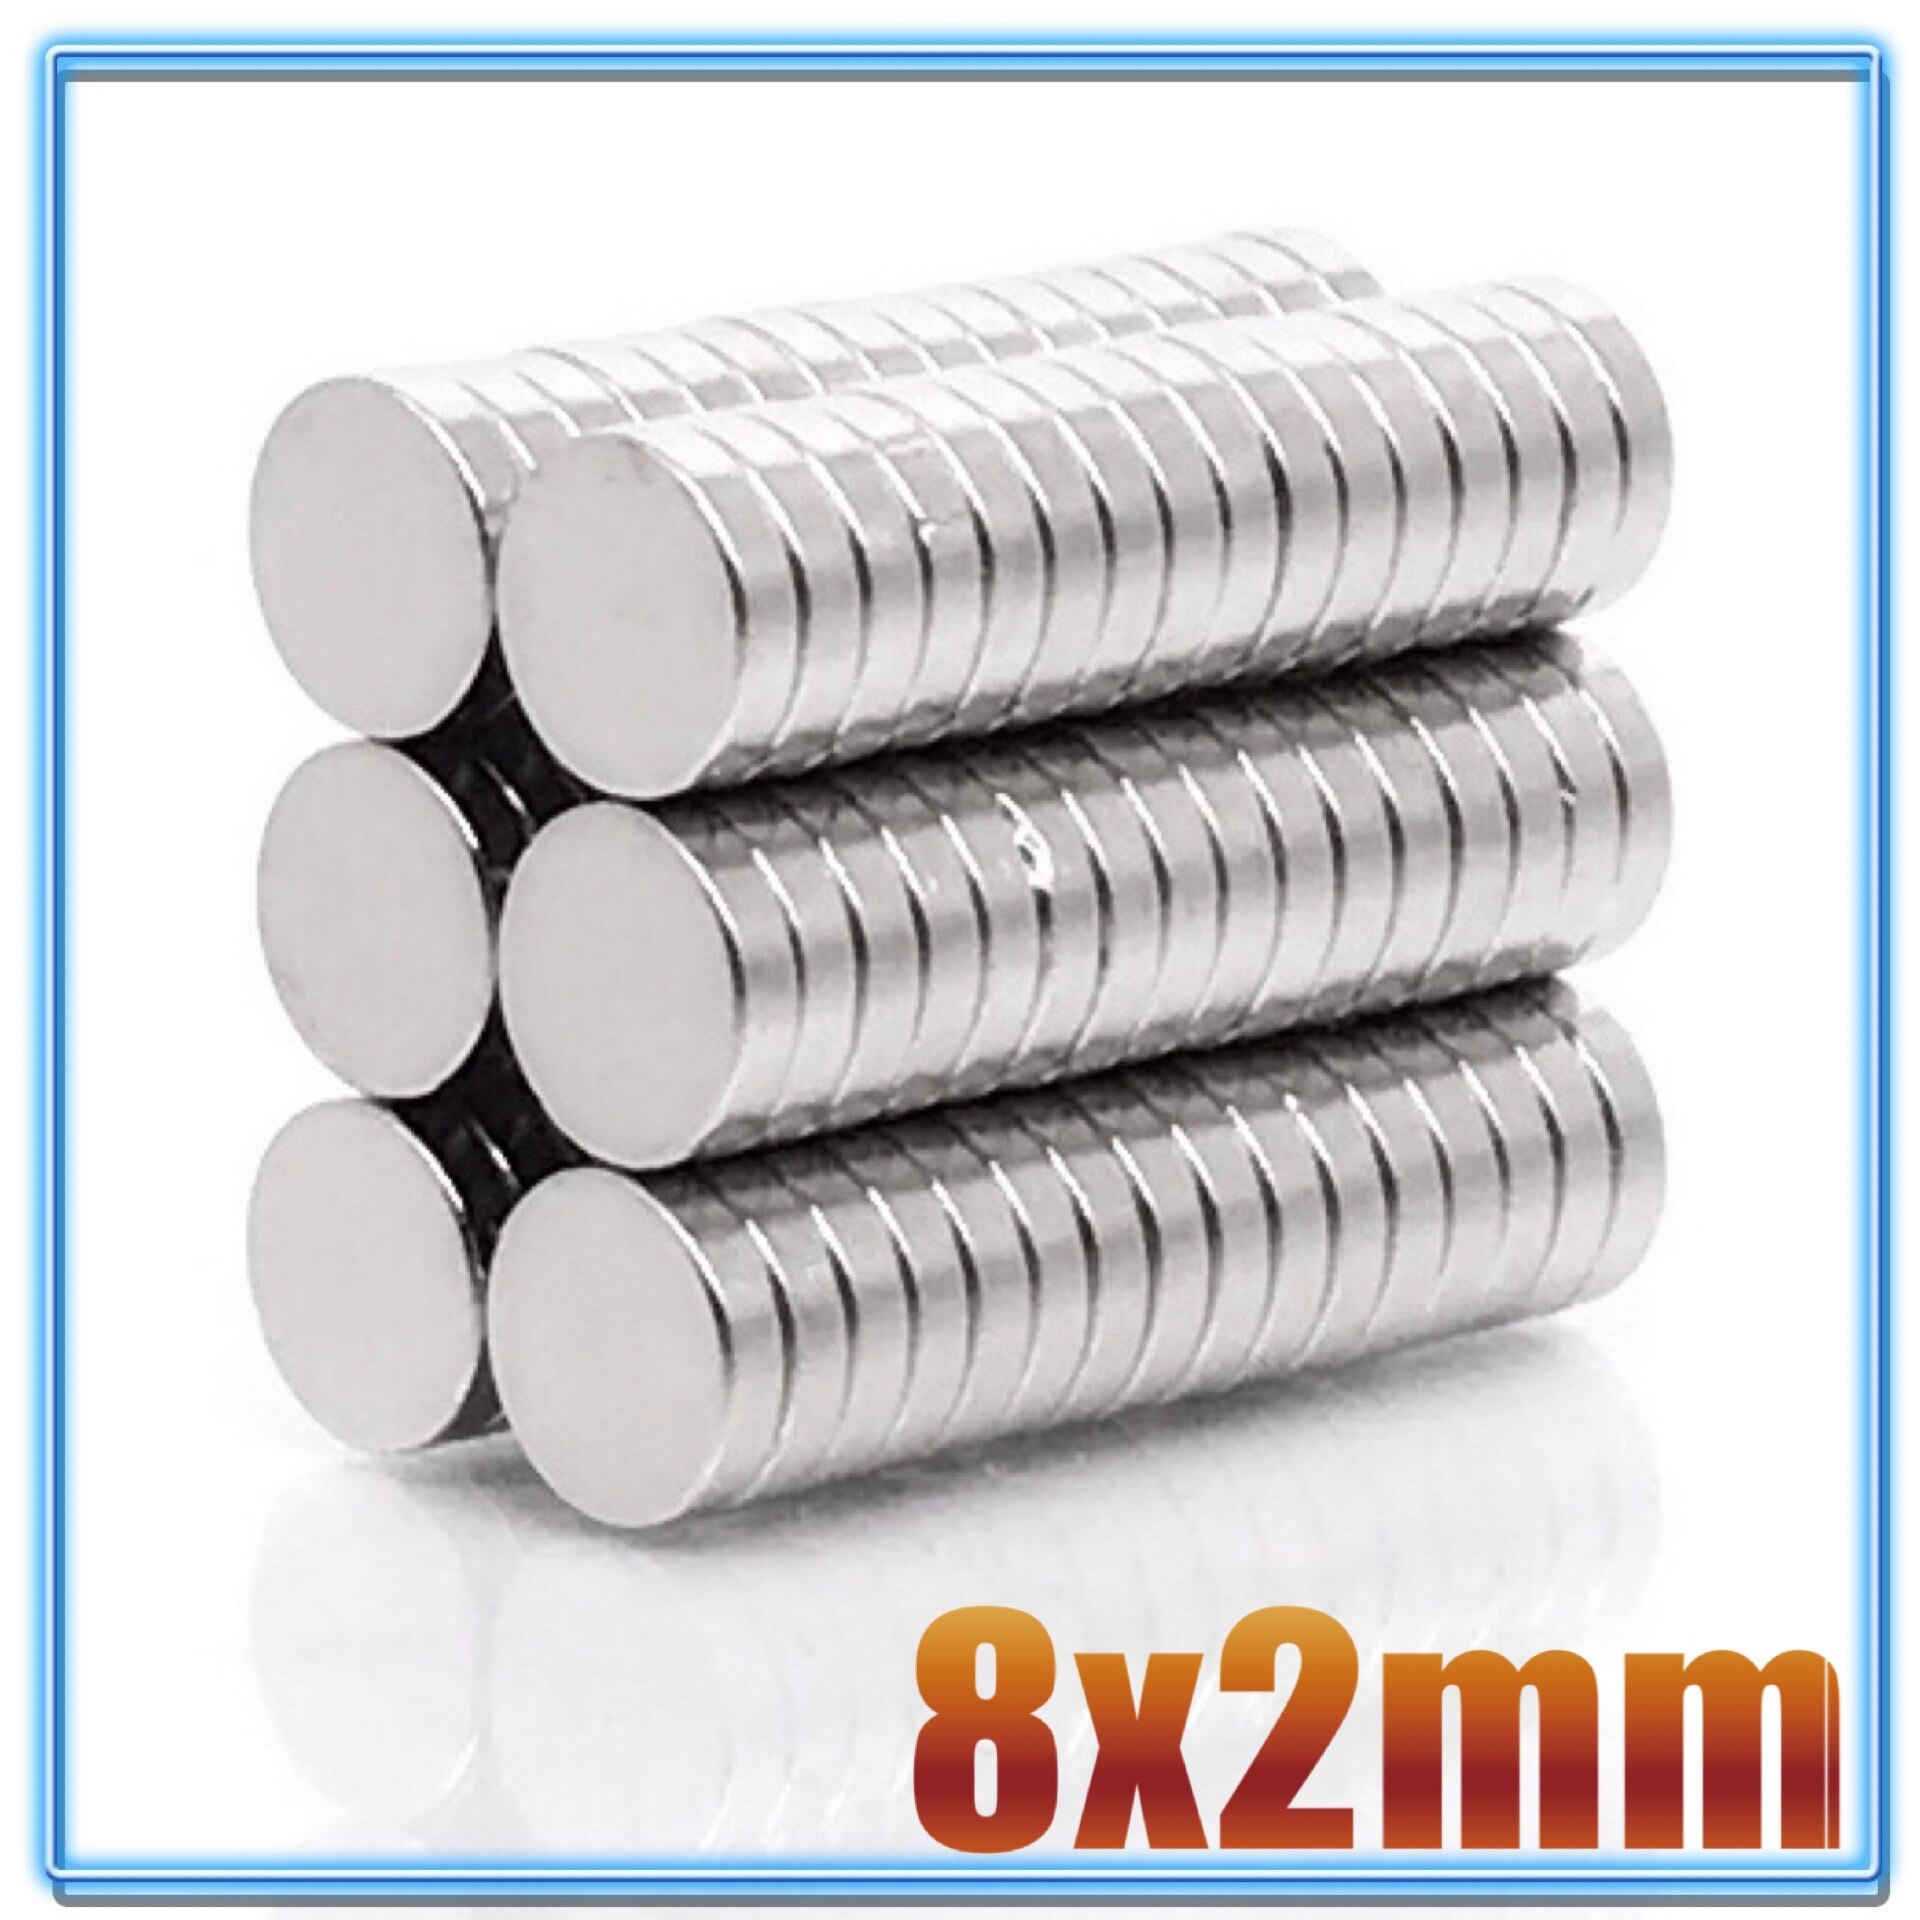 100 stk  n35 rund magnet 8 x 1 8 x 1.5 8 x 2 8 x 3 8 x 4 8 x 5 8 x 6 8 x 10 mm neodymmagnet permanent ndfeb superstærke kraftige magneter: 8 x 2(100 stk)